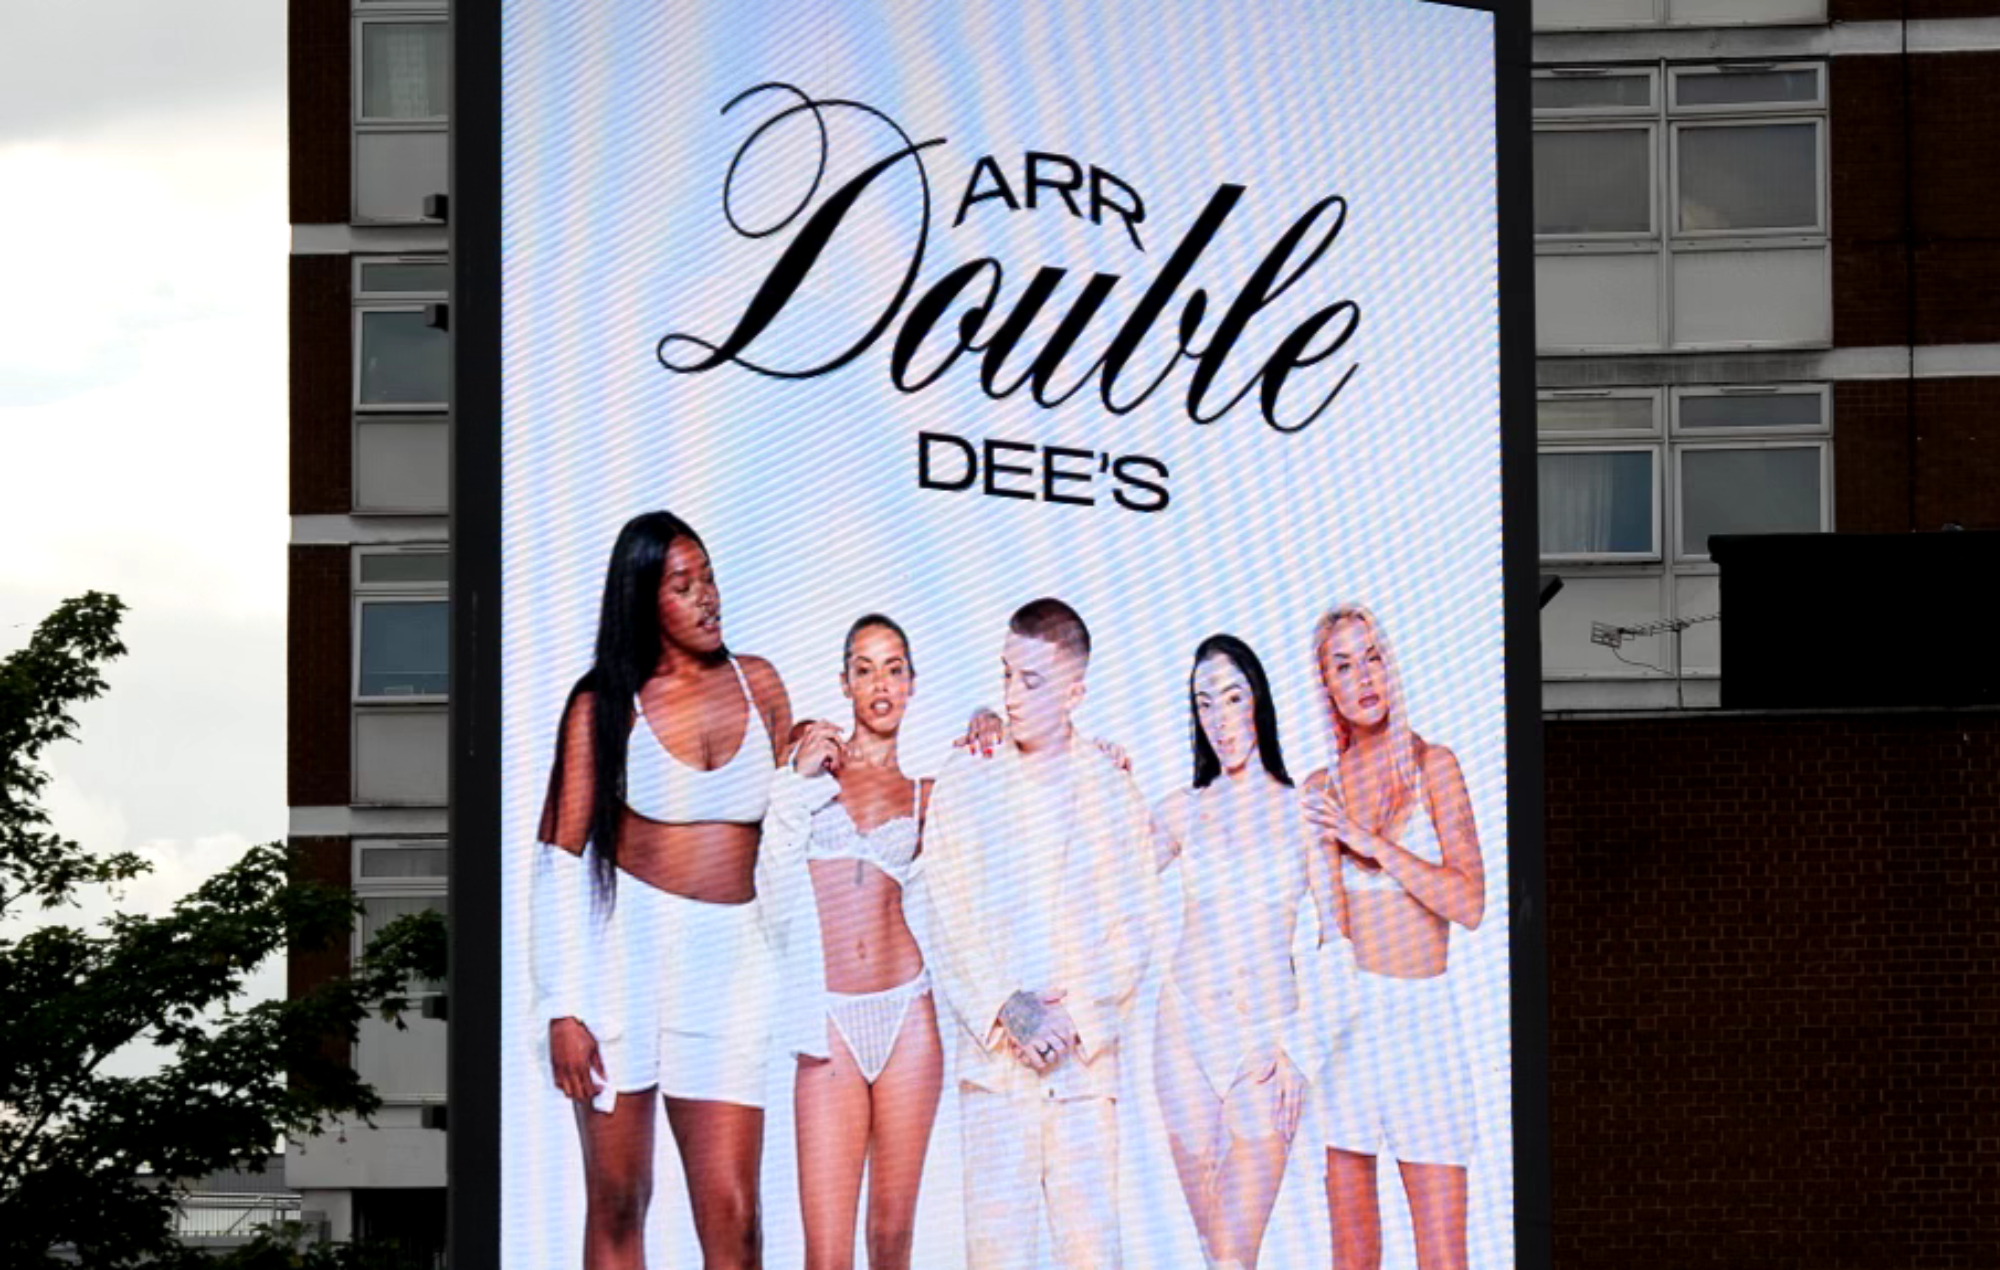 ArrDee announces lingerie line: ArrdoubleDee’s